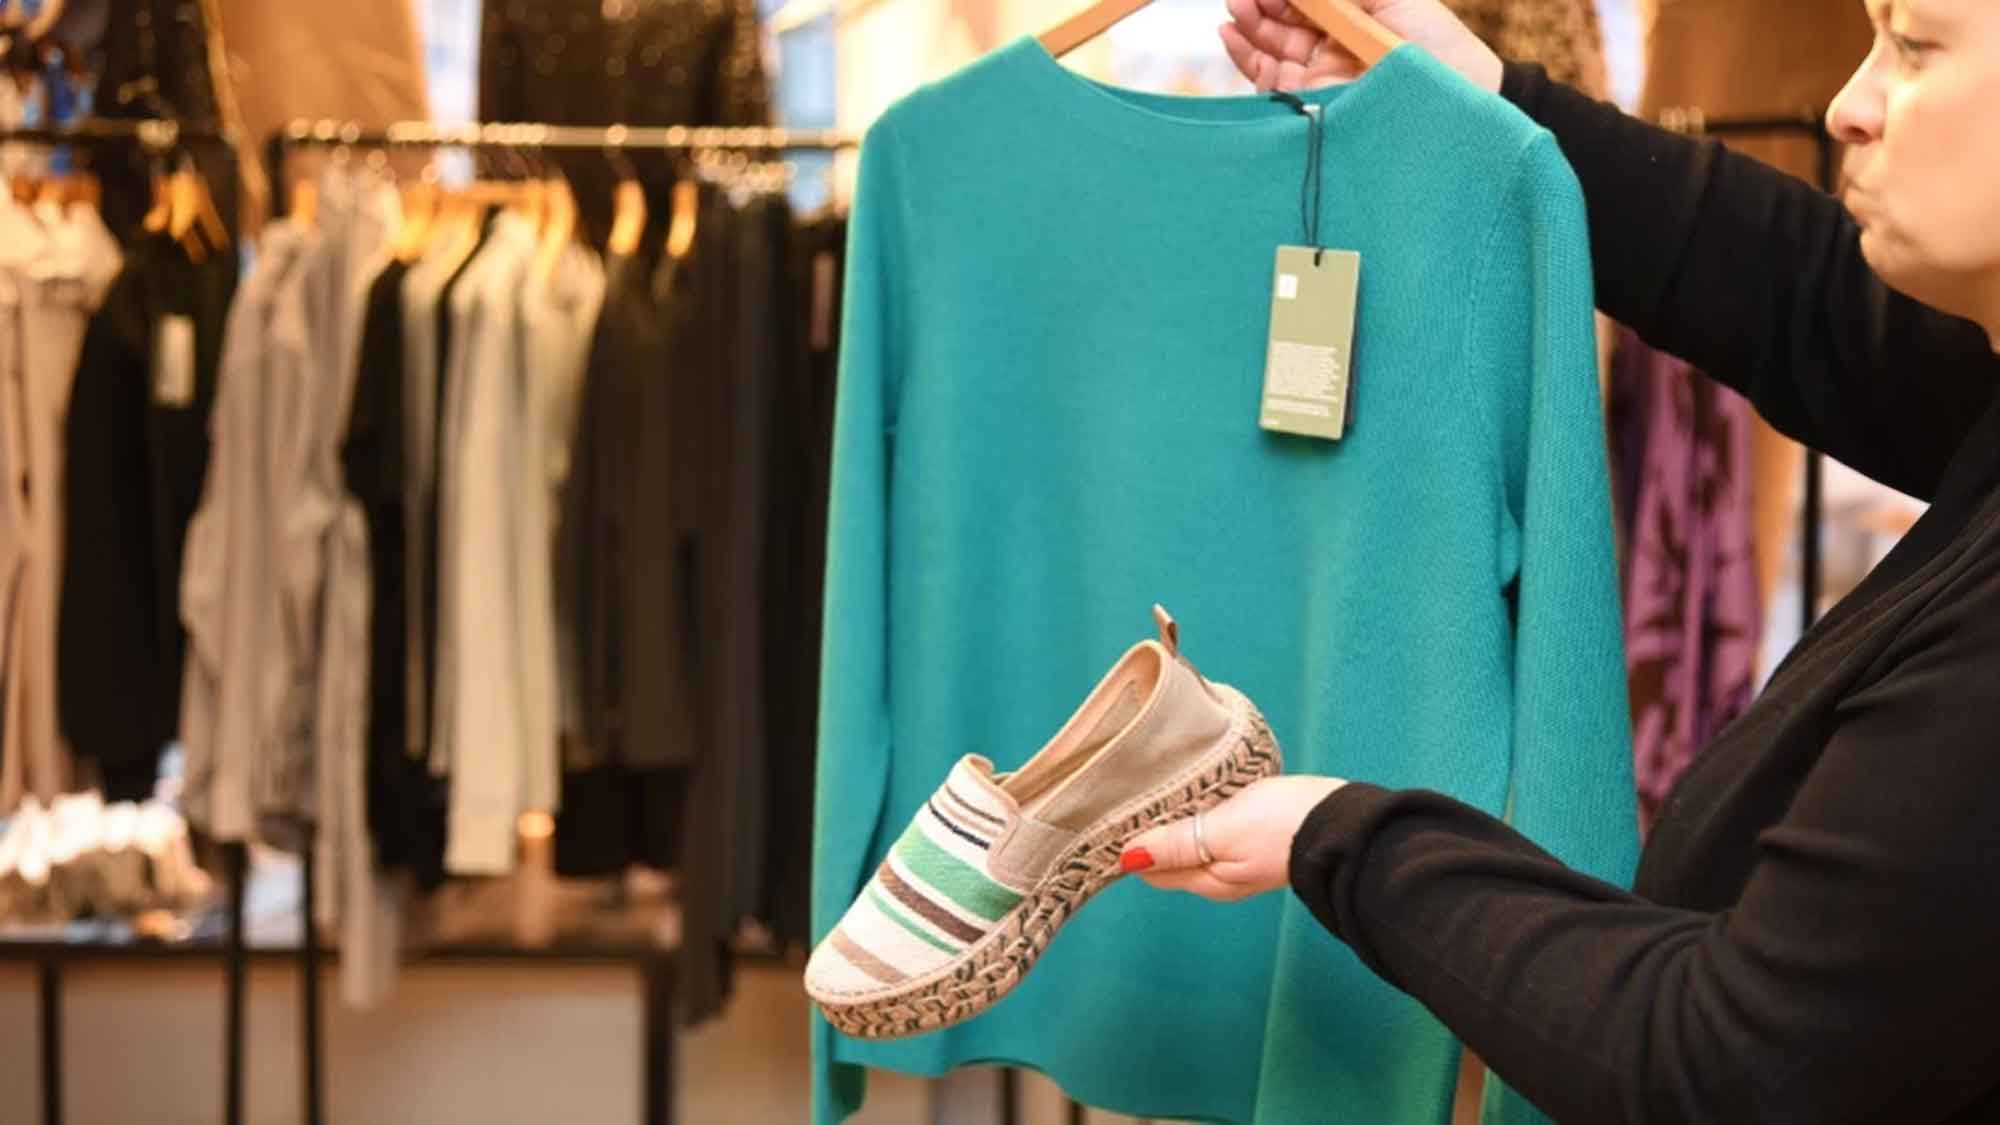 TÜV Süd prüft Textilien und Schuhe auf Schadstoffe – was steckt in unserer Bekleidung?